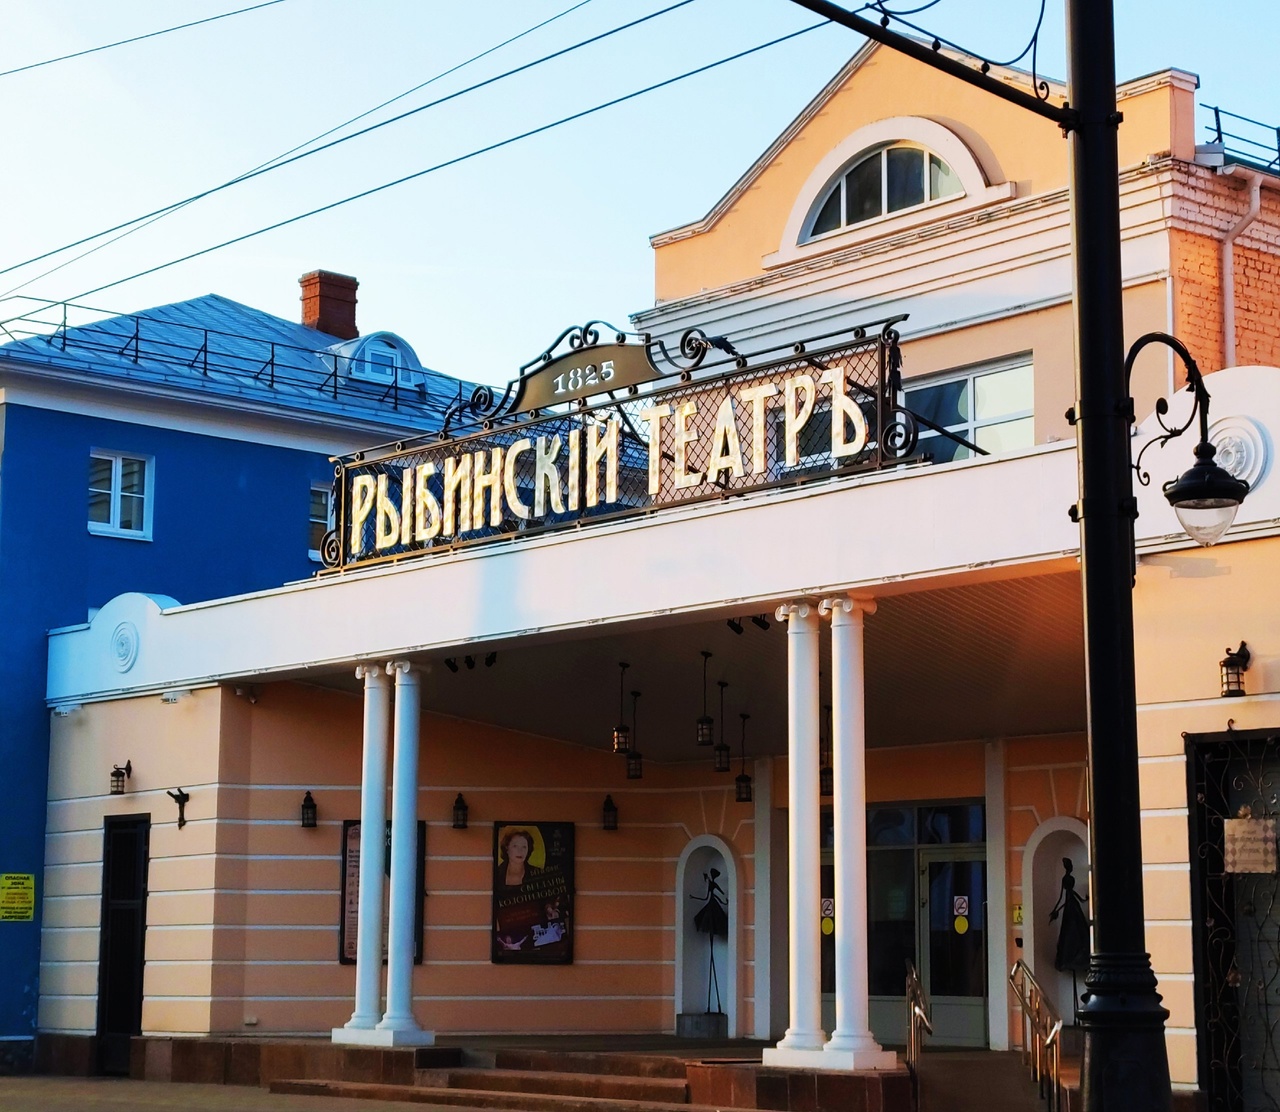 Театр в центре Рыбинска украсила новая историческая вывеска